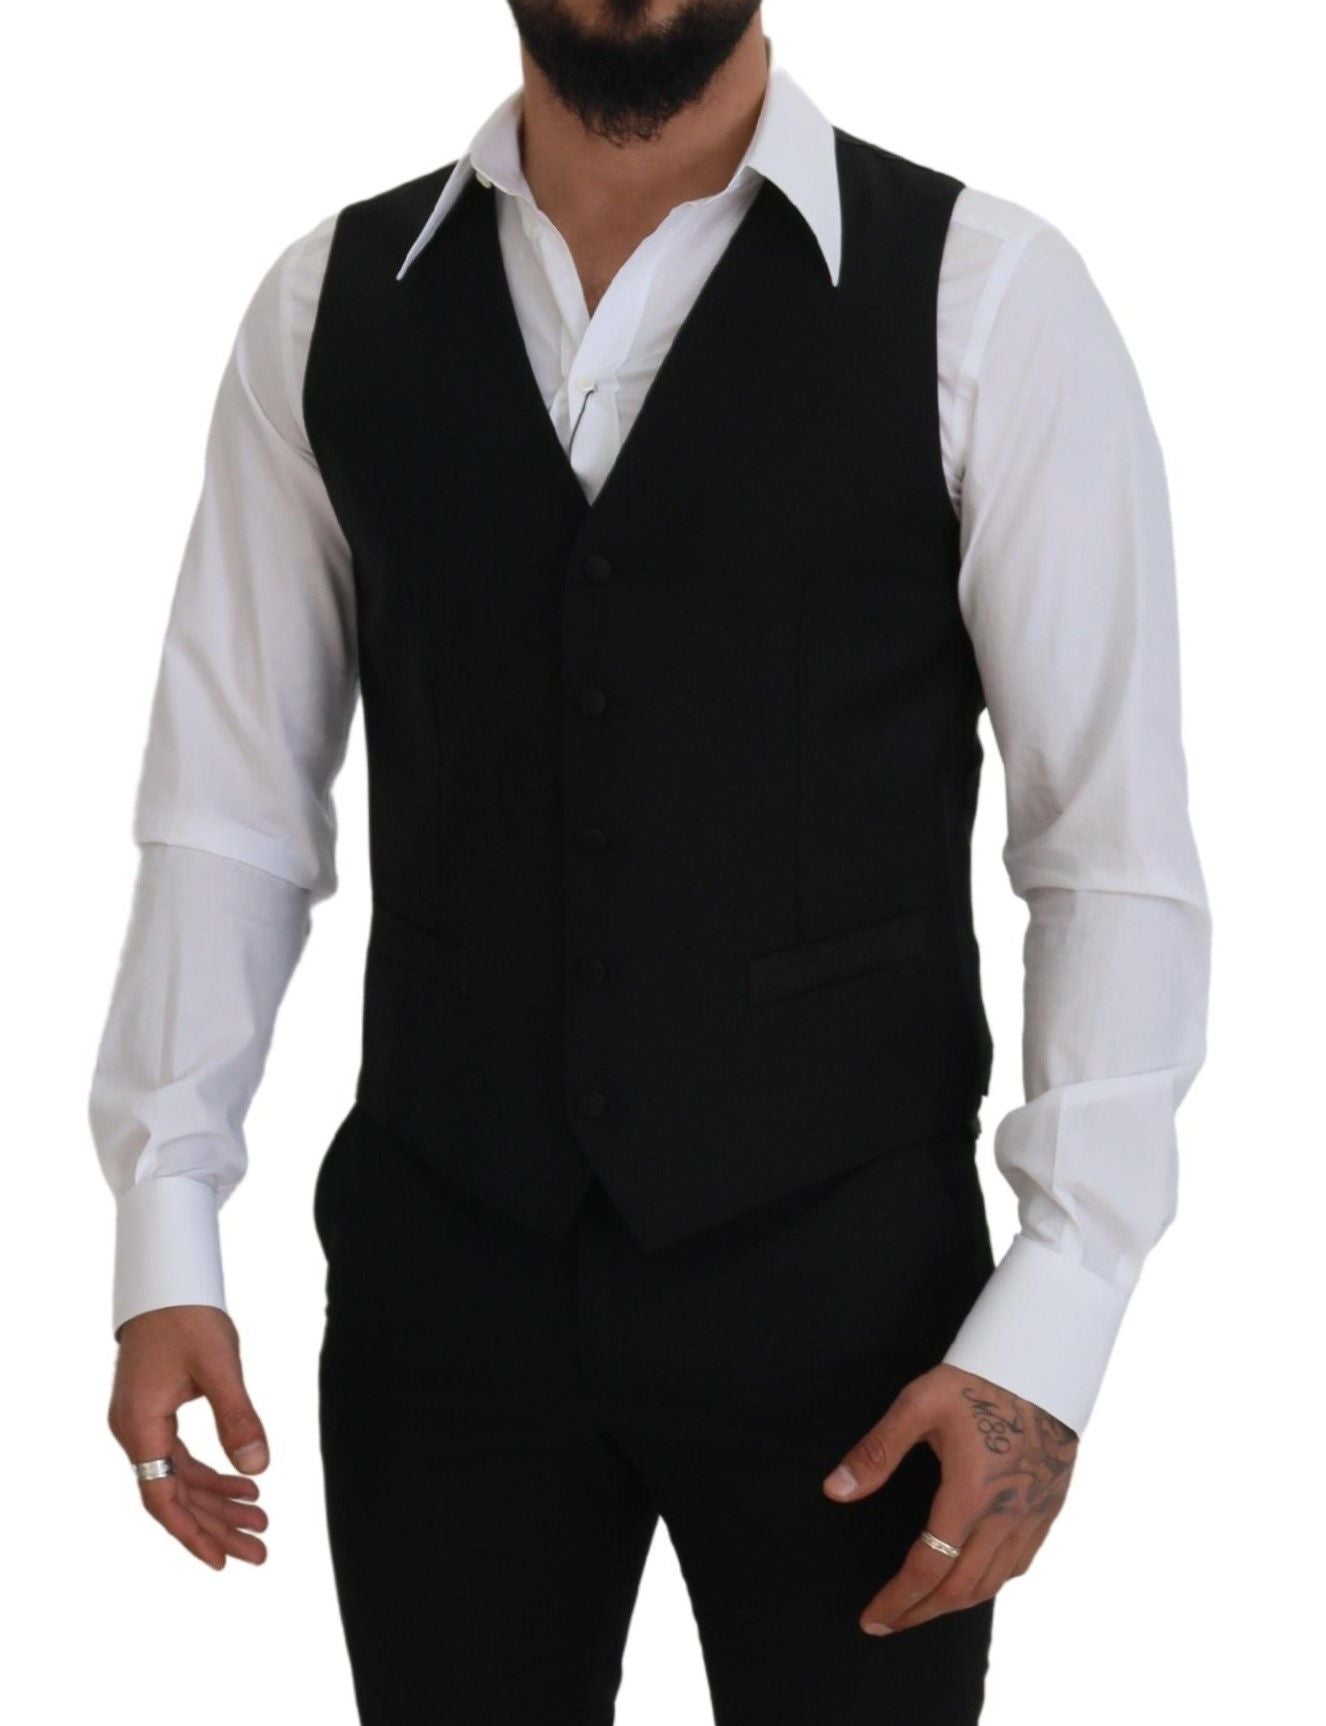 Elegant Black Single-Breasted Dress Vest